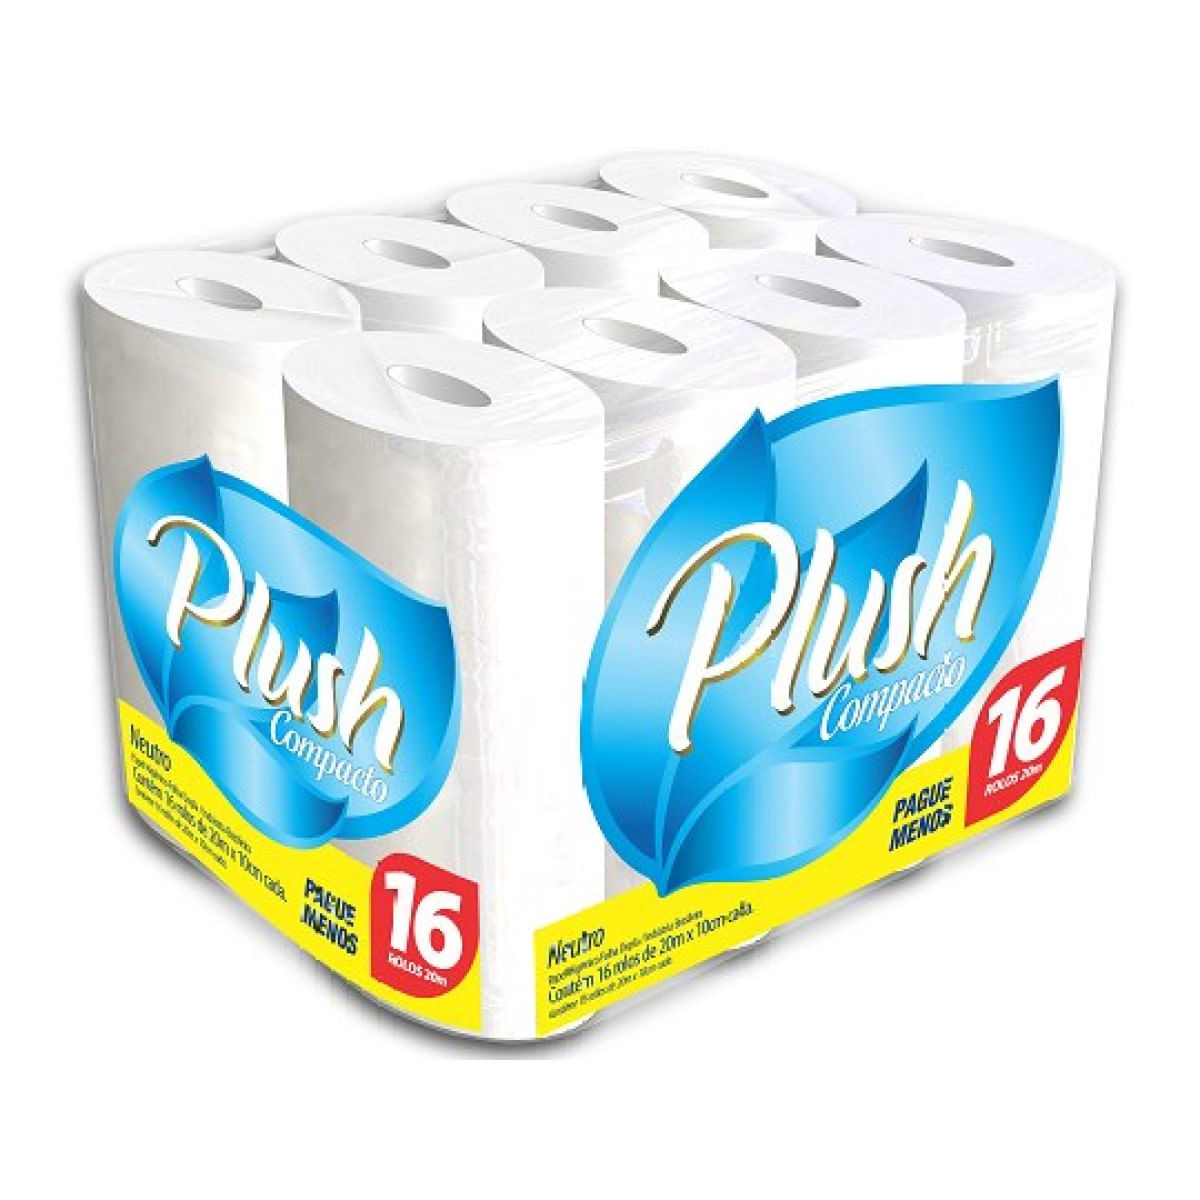 papel-higienico-folha-dupla-20-metros-plush-compacto-neutro-com-16-unidades-1.jpg